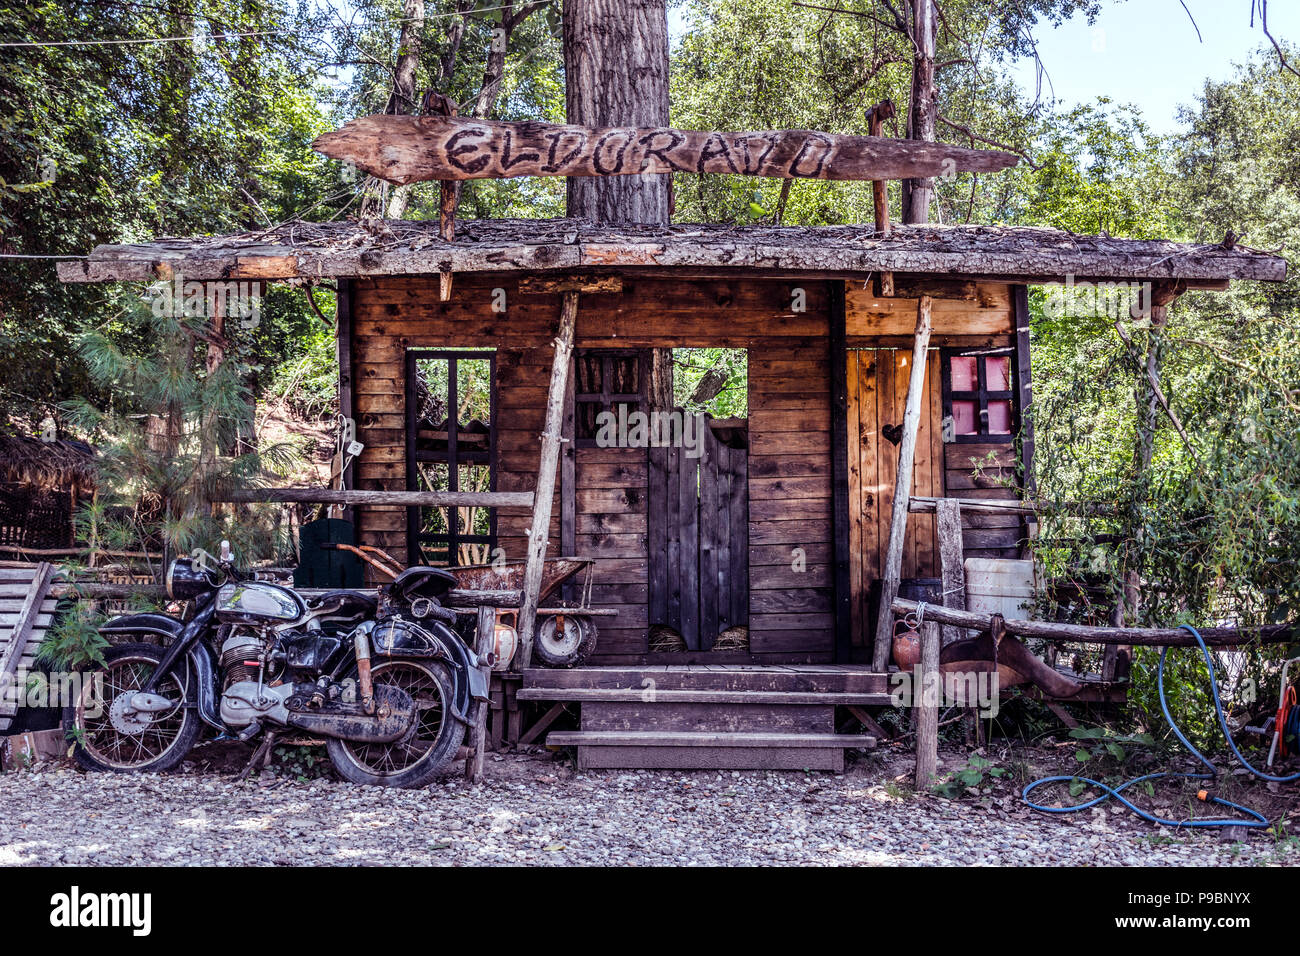 Nis, Serbie - 11 juillet 2018 : grand modèle de Wild West saloon et vieille moto en face de la maison dans la nature. El Dorado texte sur planche en bois Banque D'Images